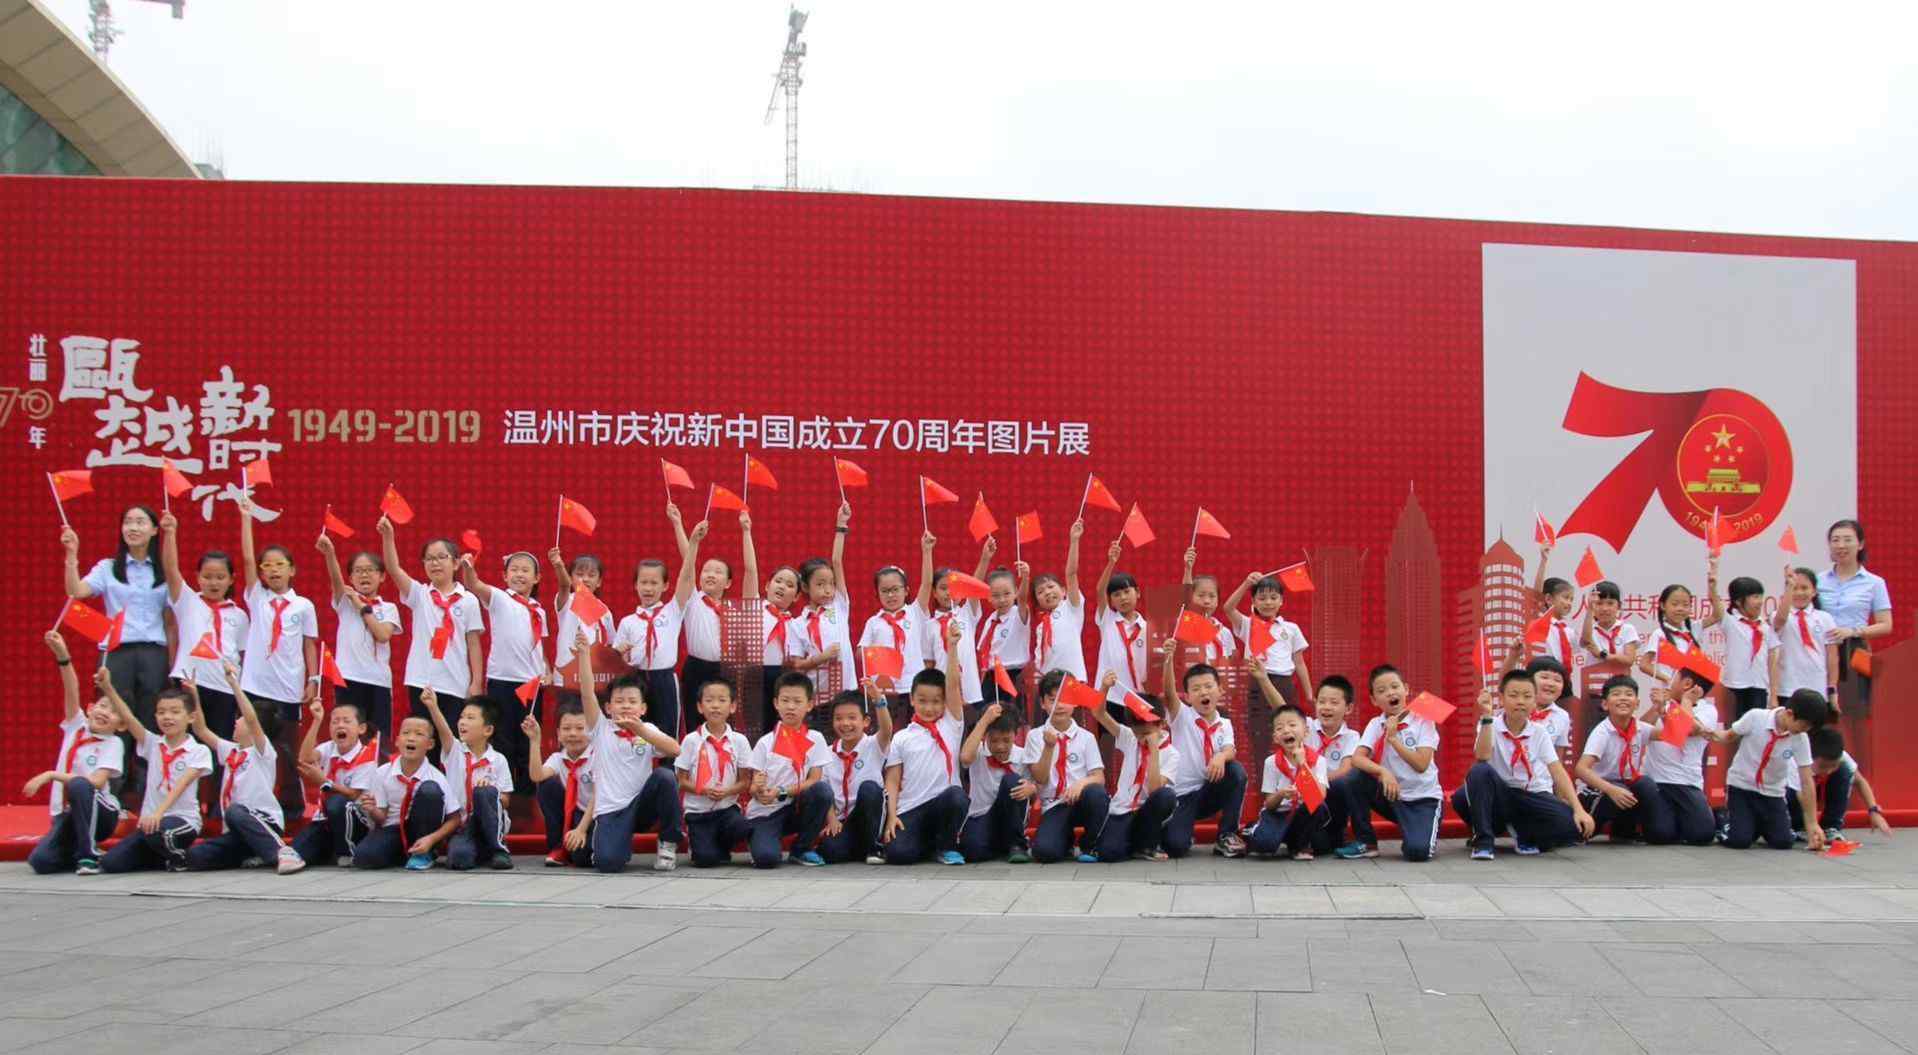 建国70周年图片 温州市庆祝新中国成立70周年图片展成假期热门打卡地